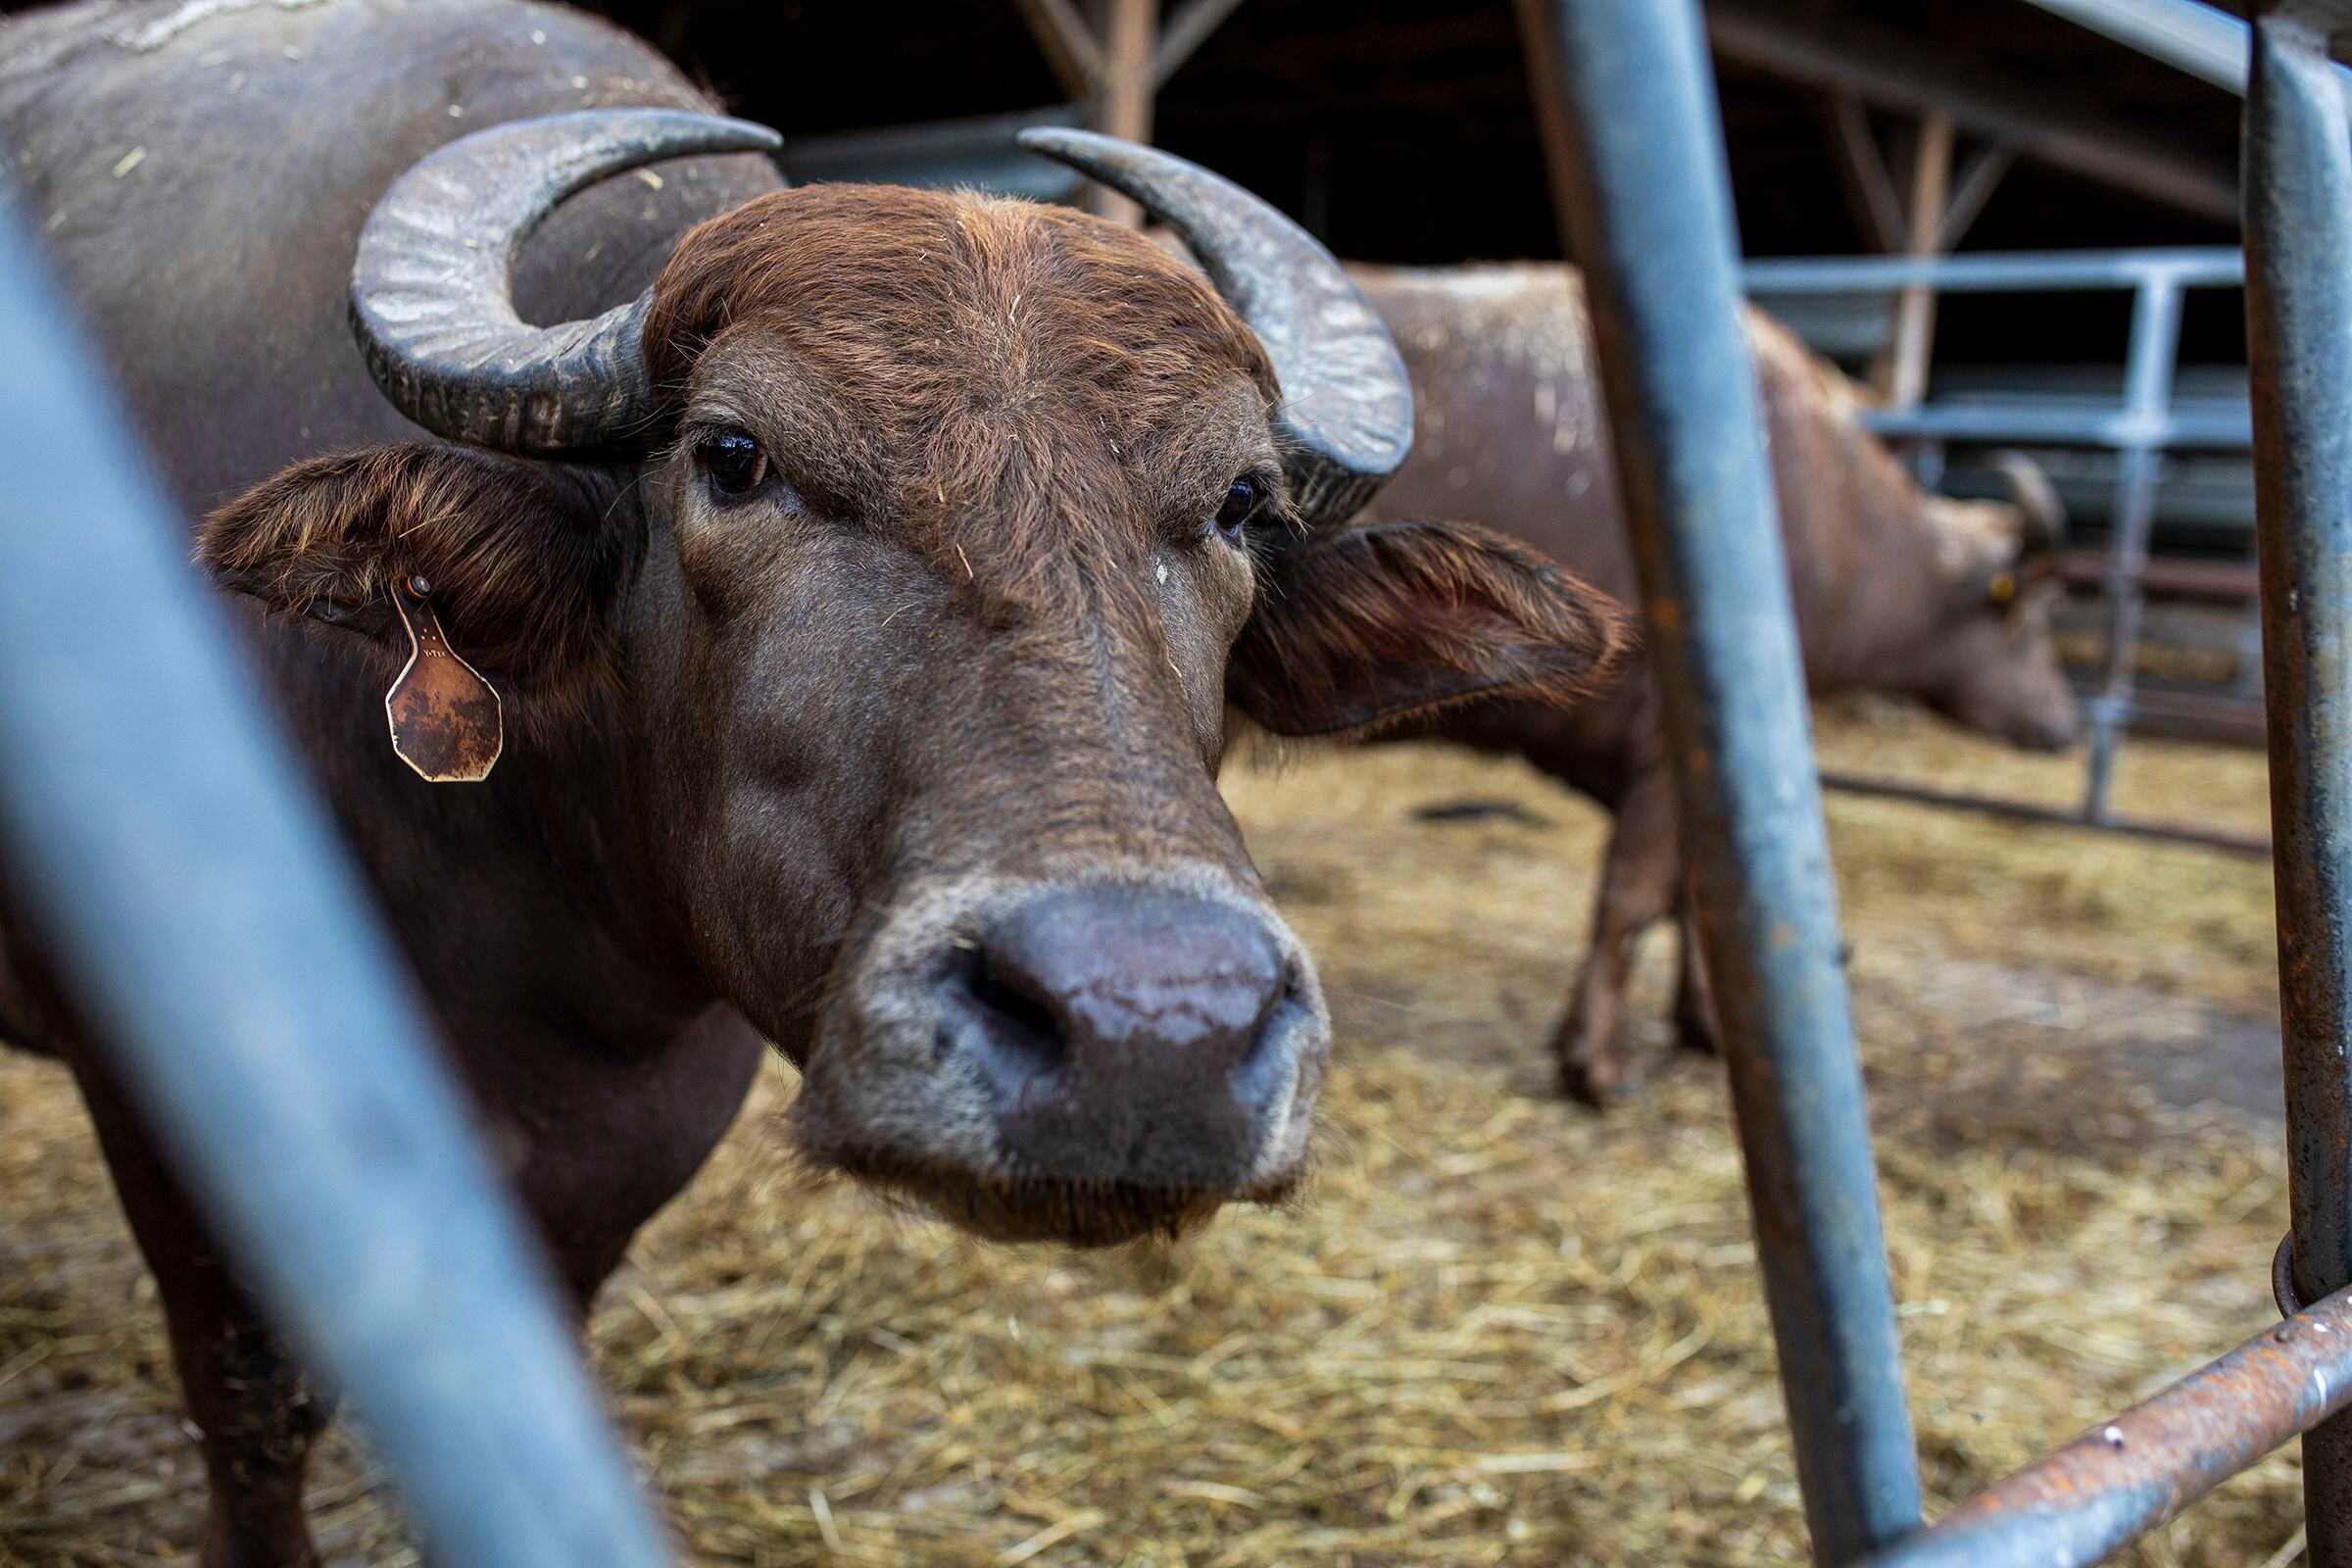 Can bufala mozzarella help Pennsylvania's dairy farms